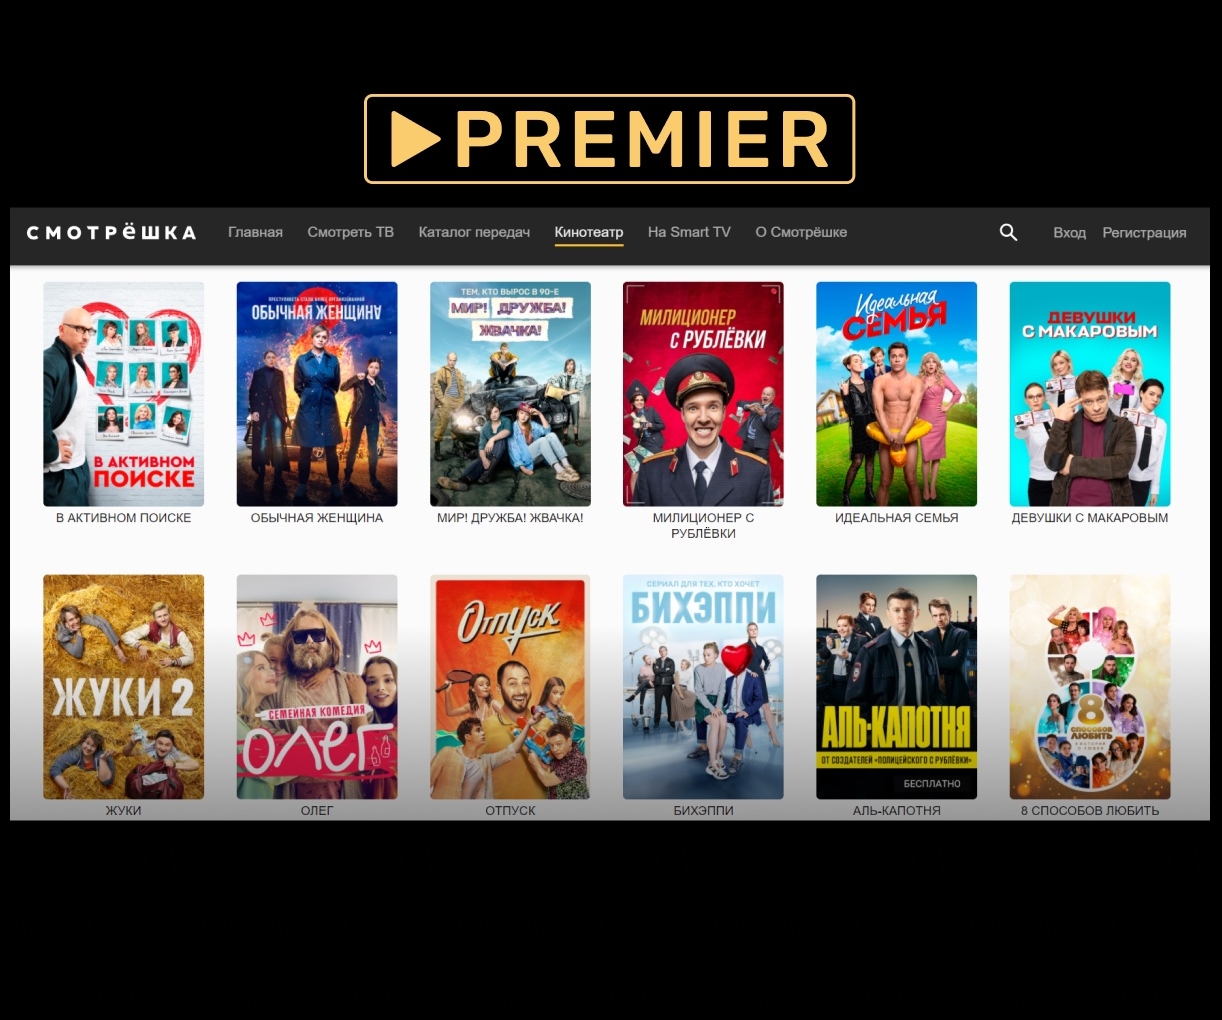 Сериалы и шоу видеосервиса PREMIER стали доступны пользователям «Смотрёшки»